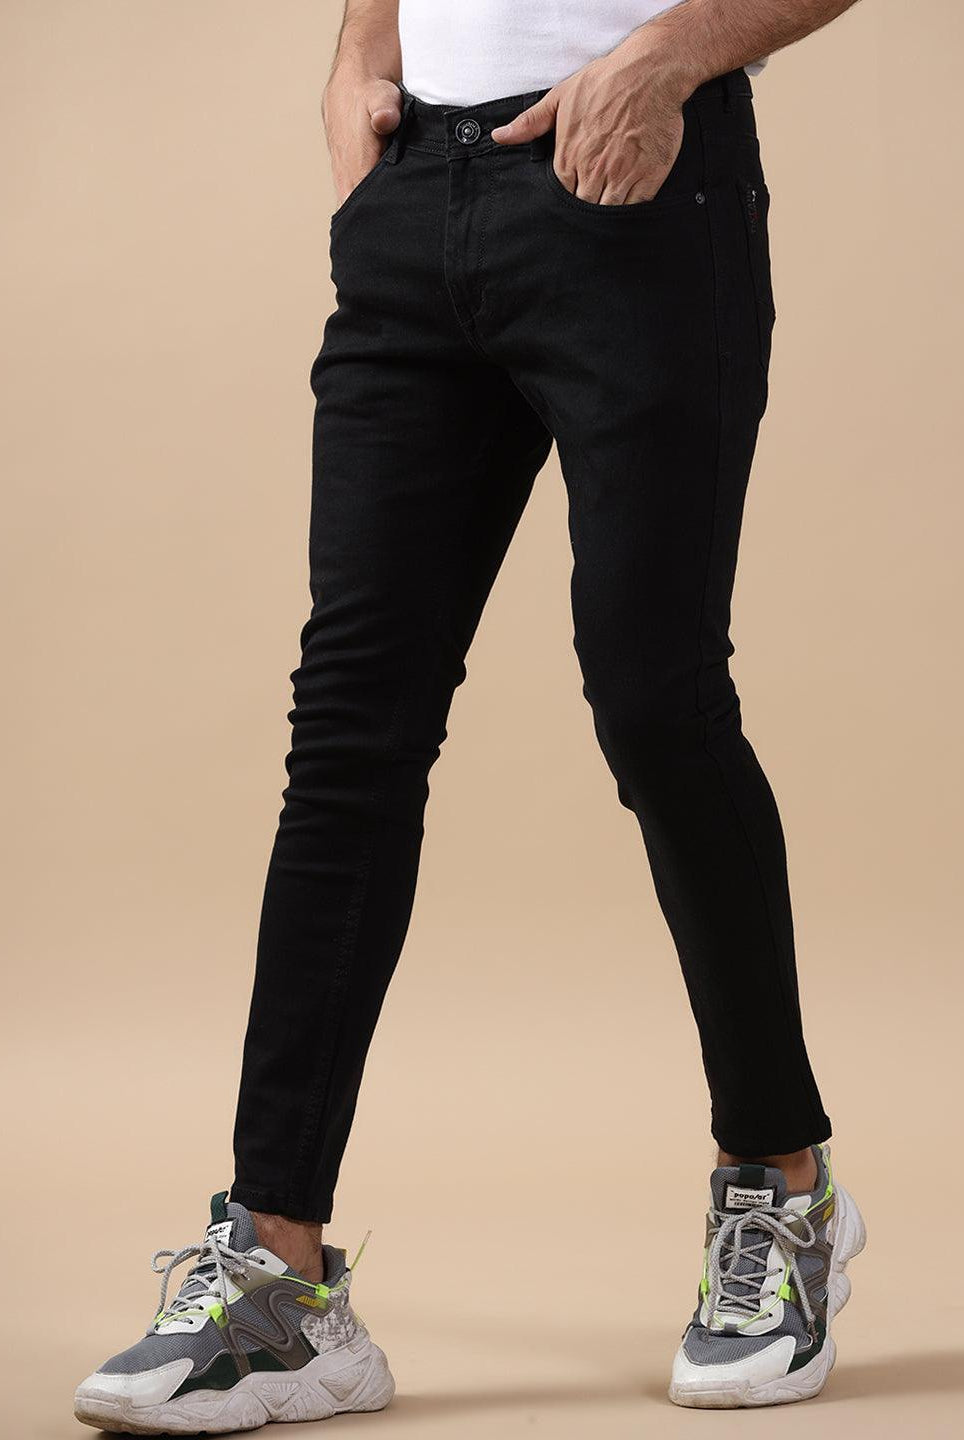 Black Denim Jeans For Men 